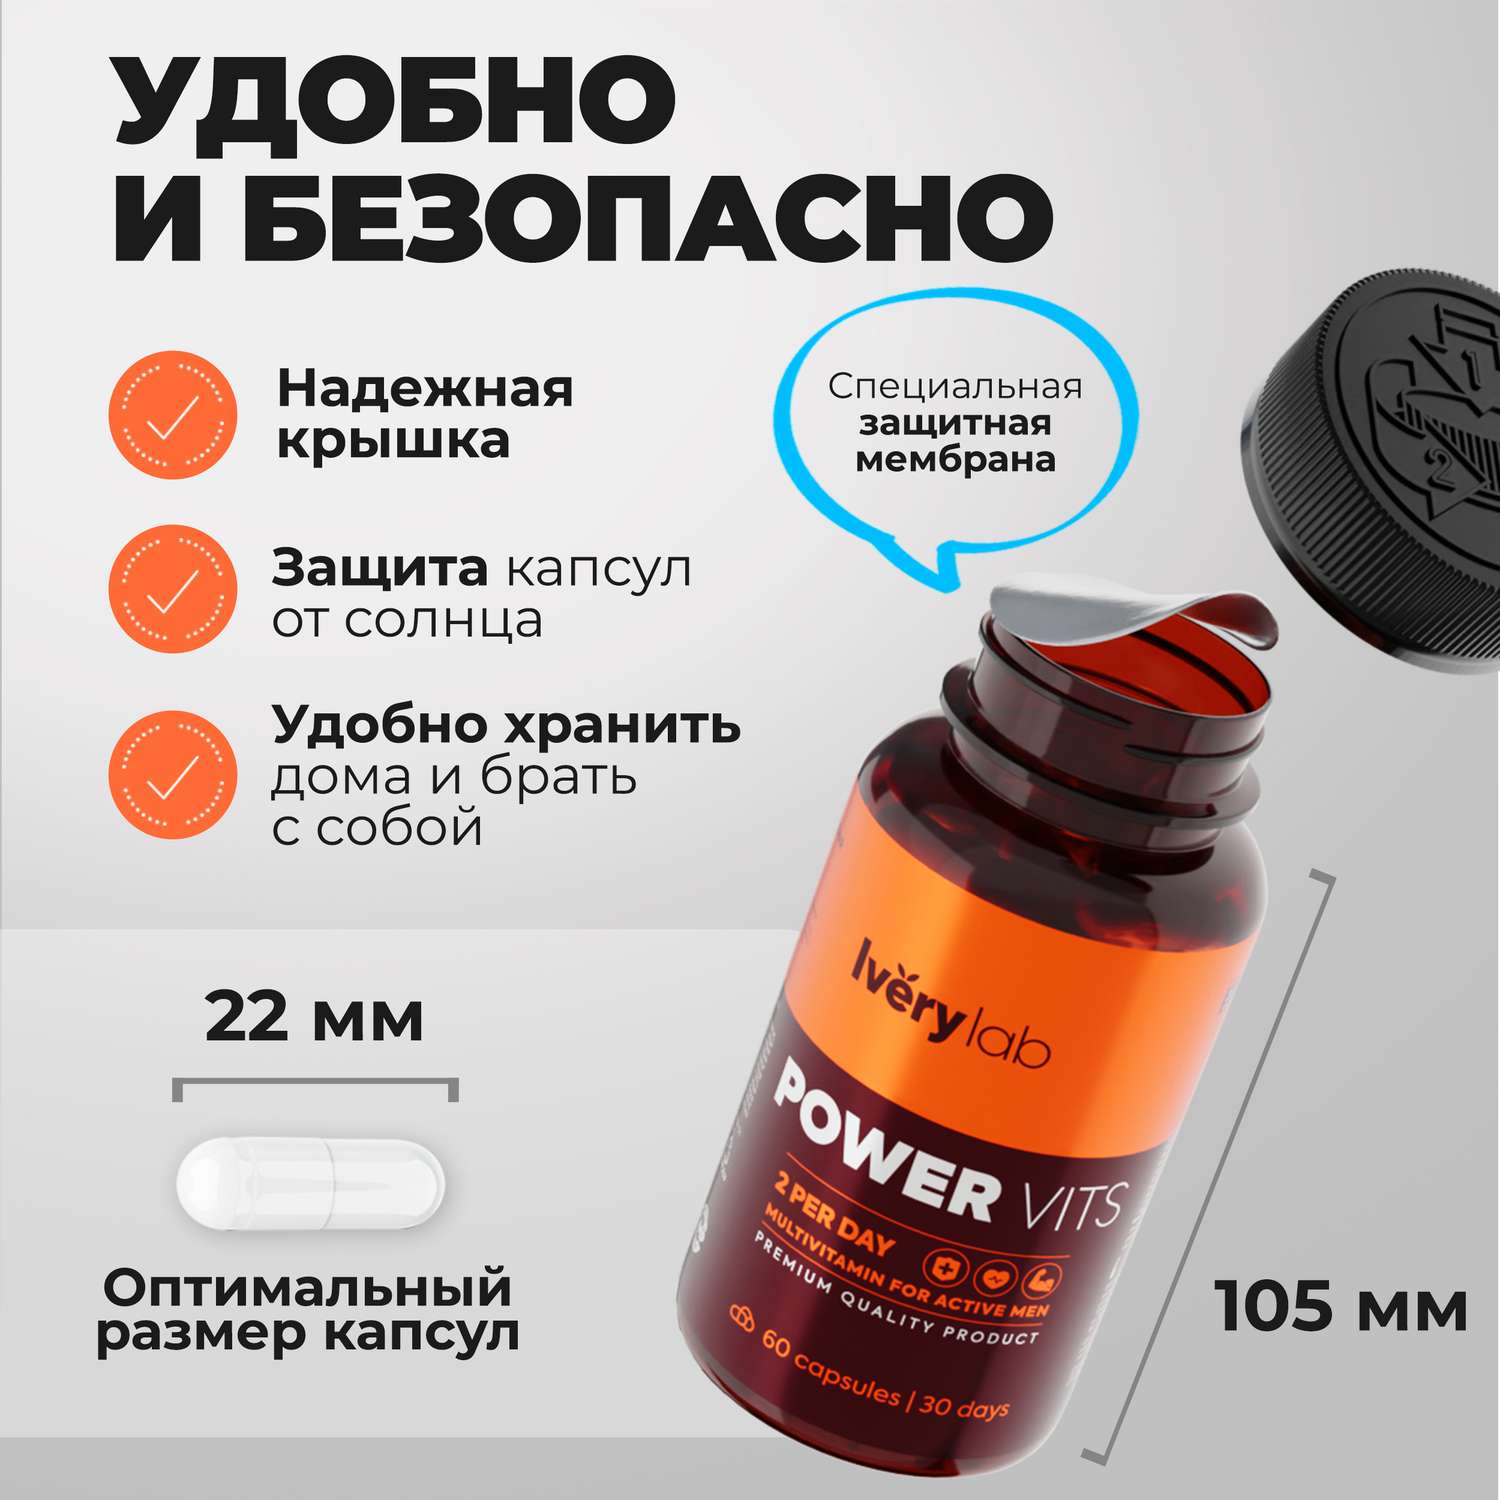 БАД Iverylab Мужской витаминно-минеральный комплекс для здоровья и функциональной поддержки Power Vits - фото 5